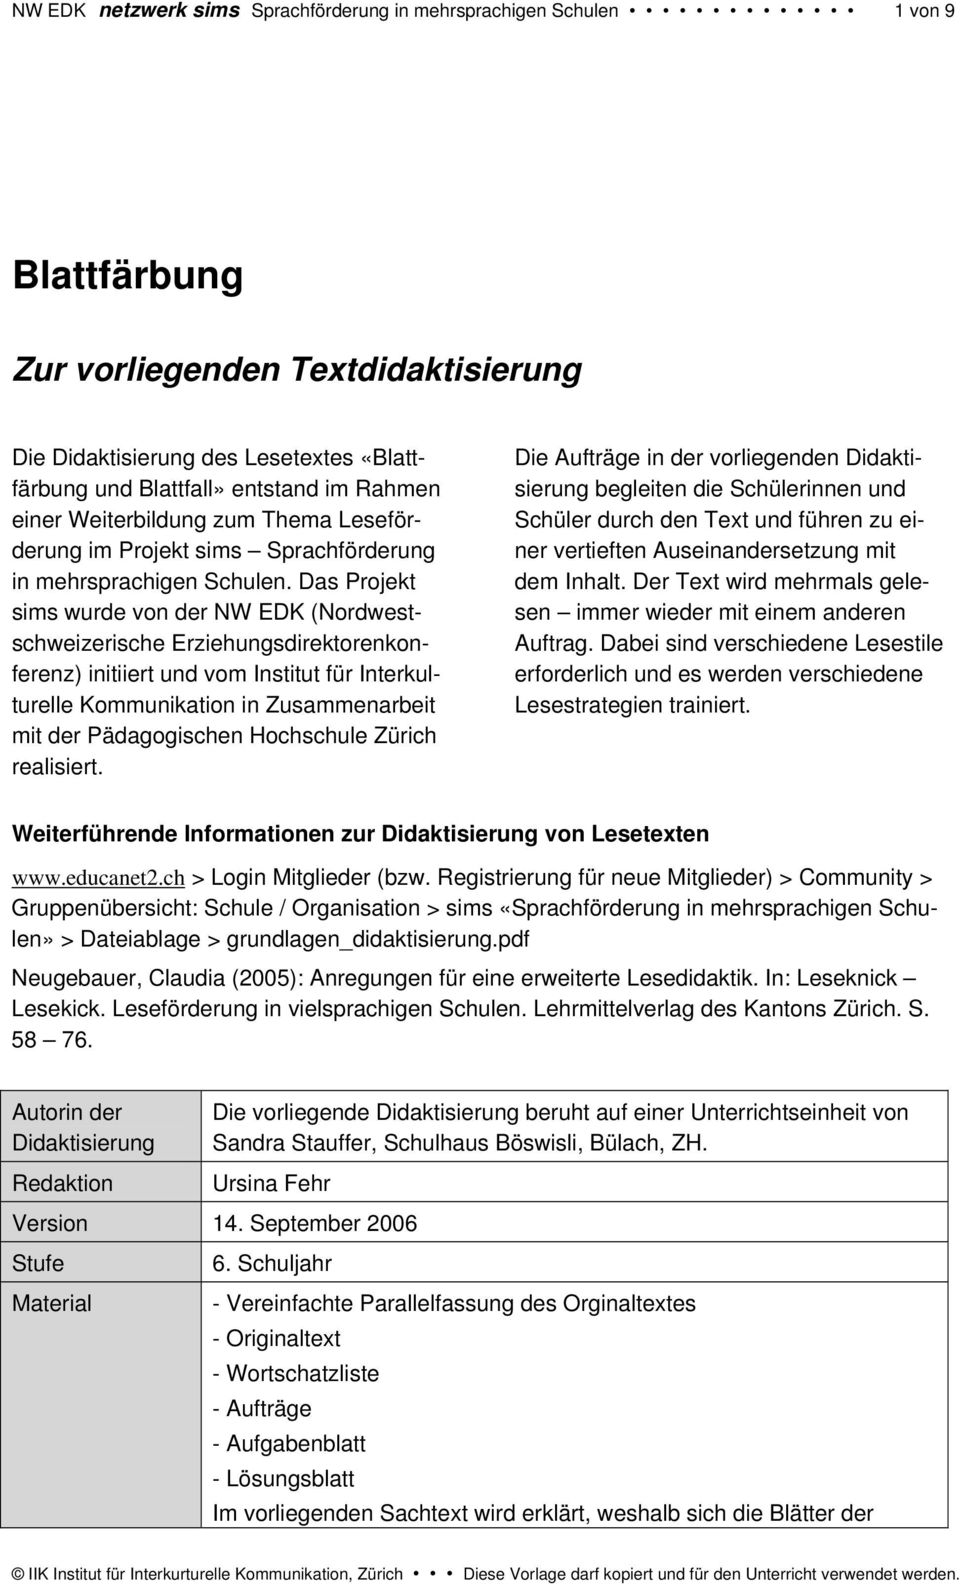 Das Projekt sims wurde von der NW EDK (Nordwestschweizerische Erziehungsdirektorenkonferenz) initiiert und vom Institut für Interkulturelle Kommunikation in Zusammenarbeit mit der Pädagogischen